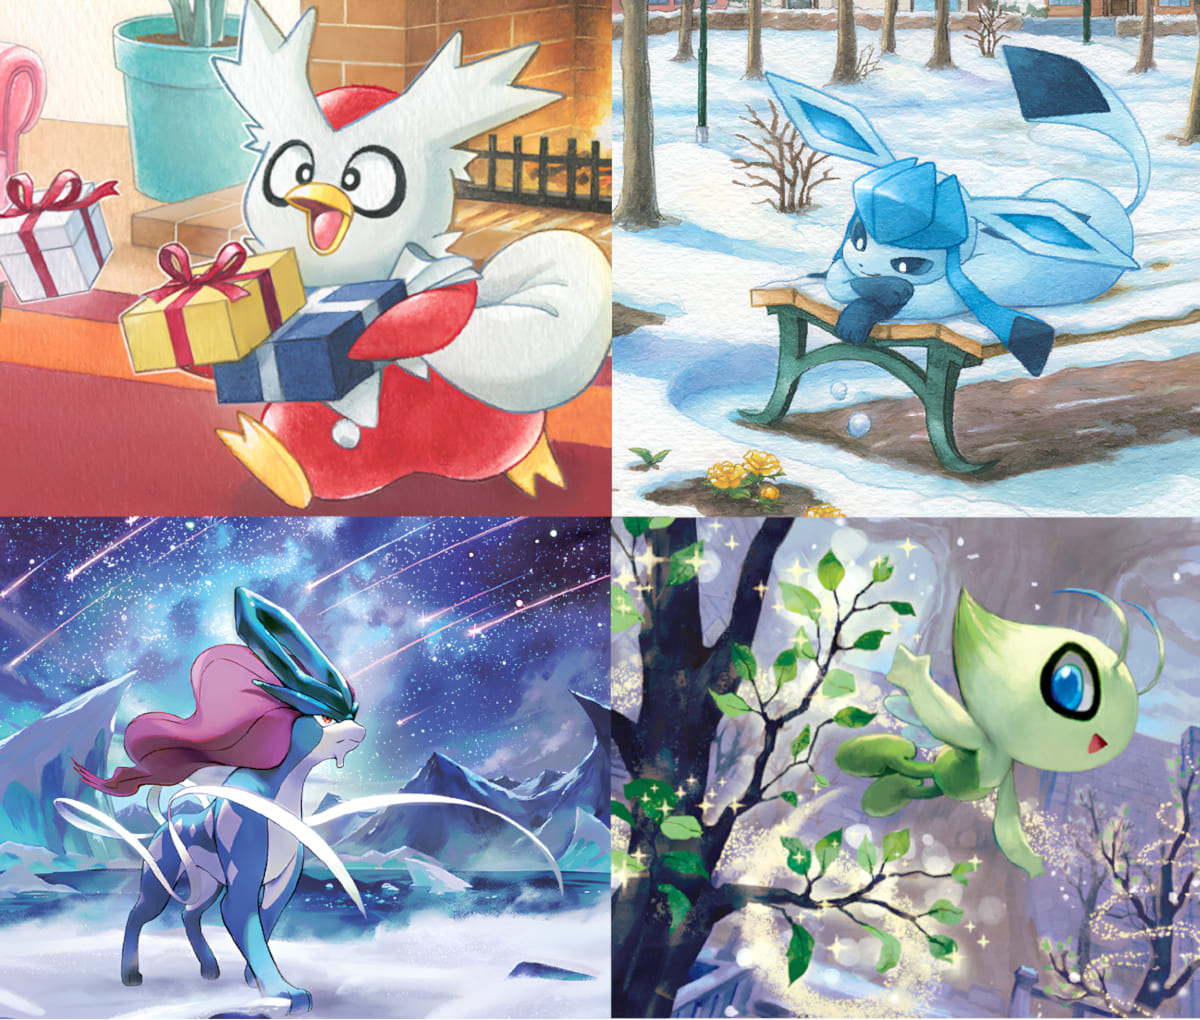 Weihnachten-mit-Pokémon-Winter-winterliche-Karten